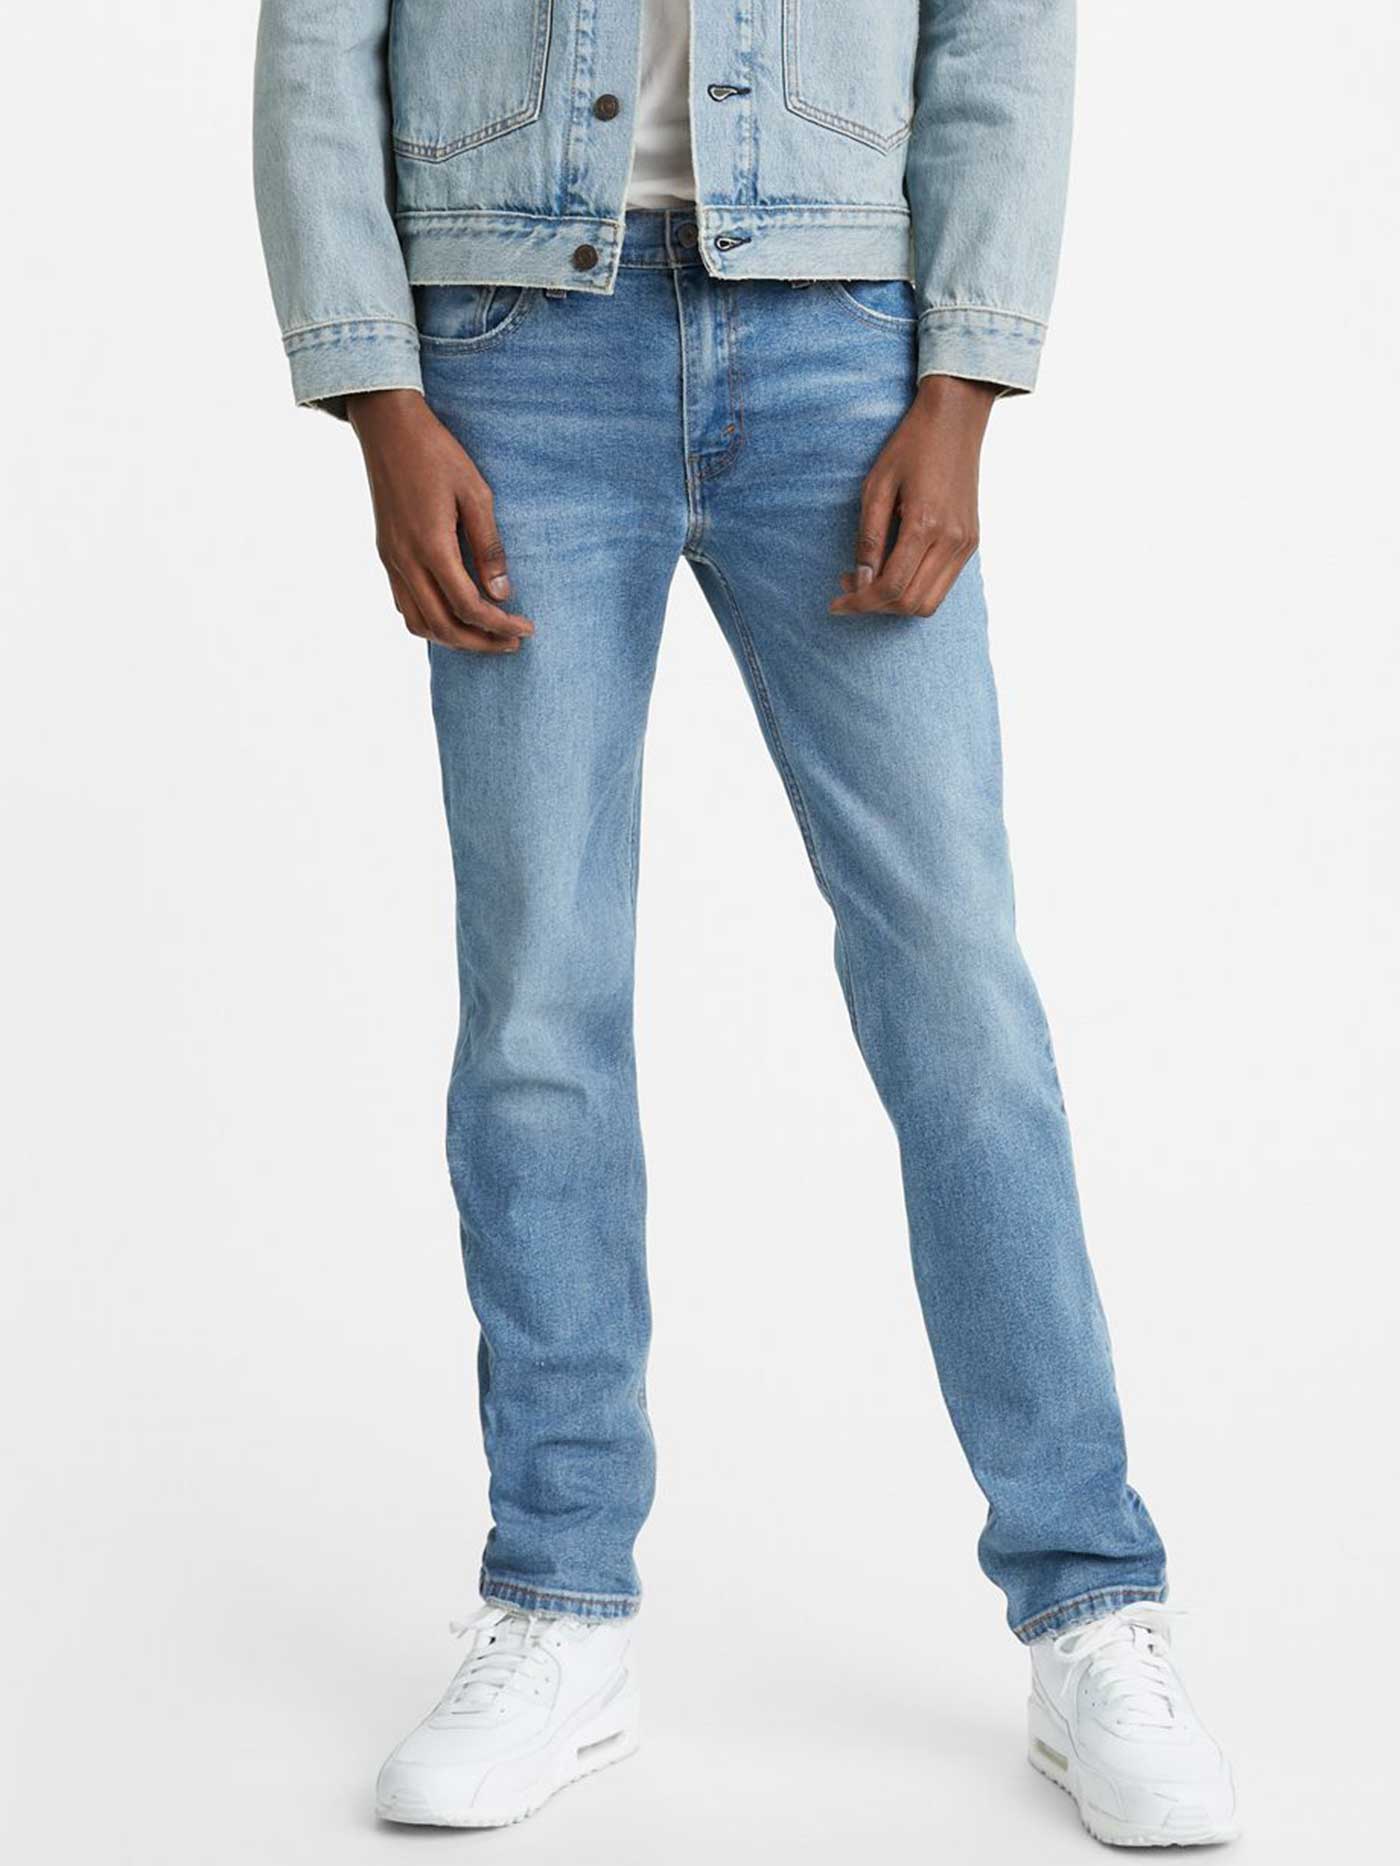 Levis 511 Slim Fit Jeans | EMPIRE